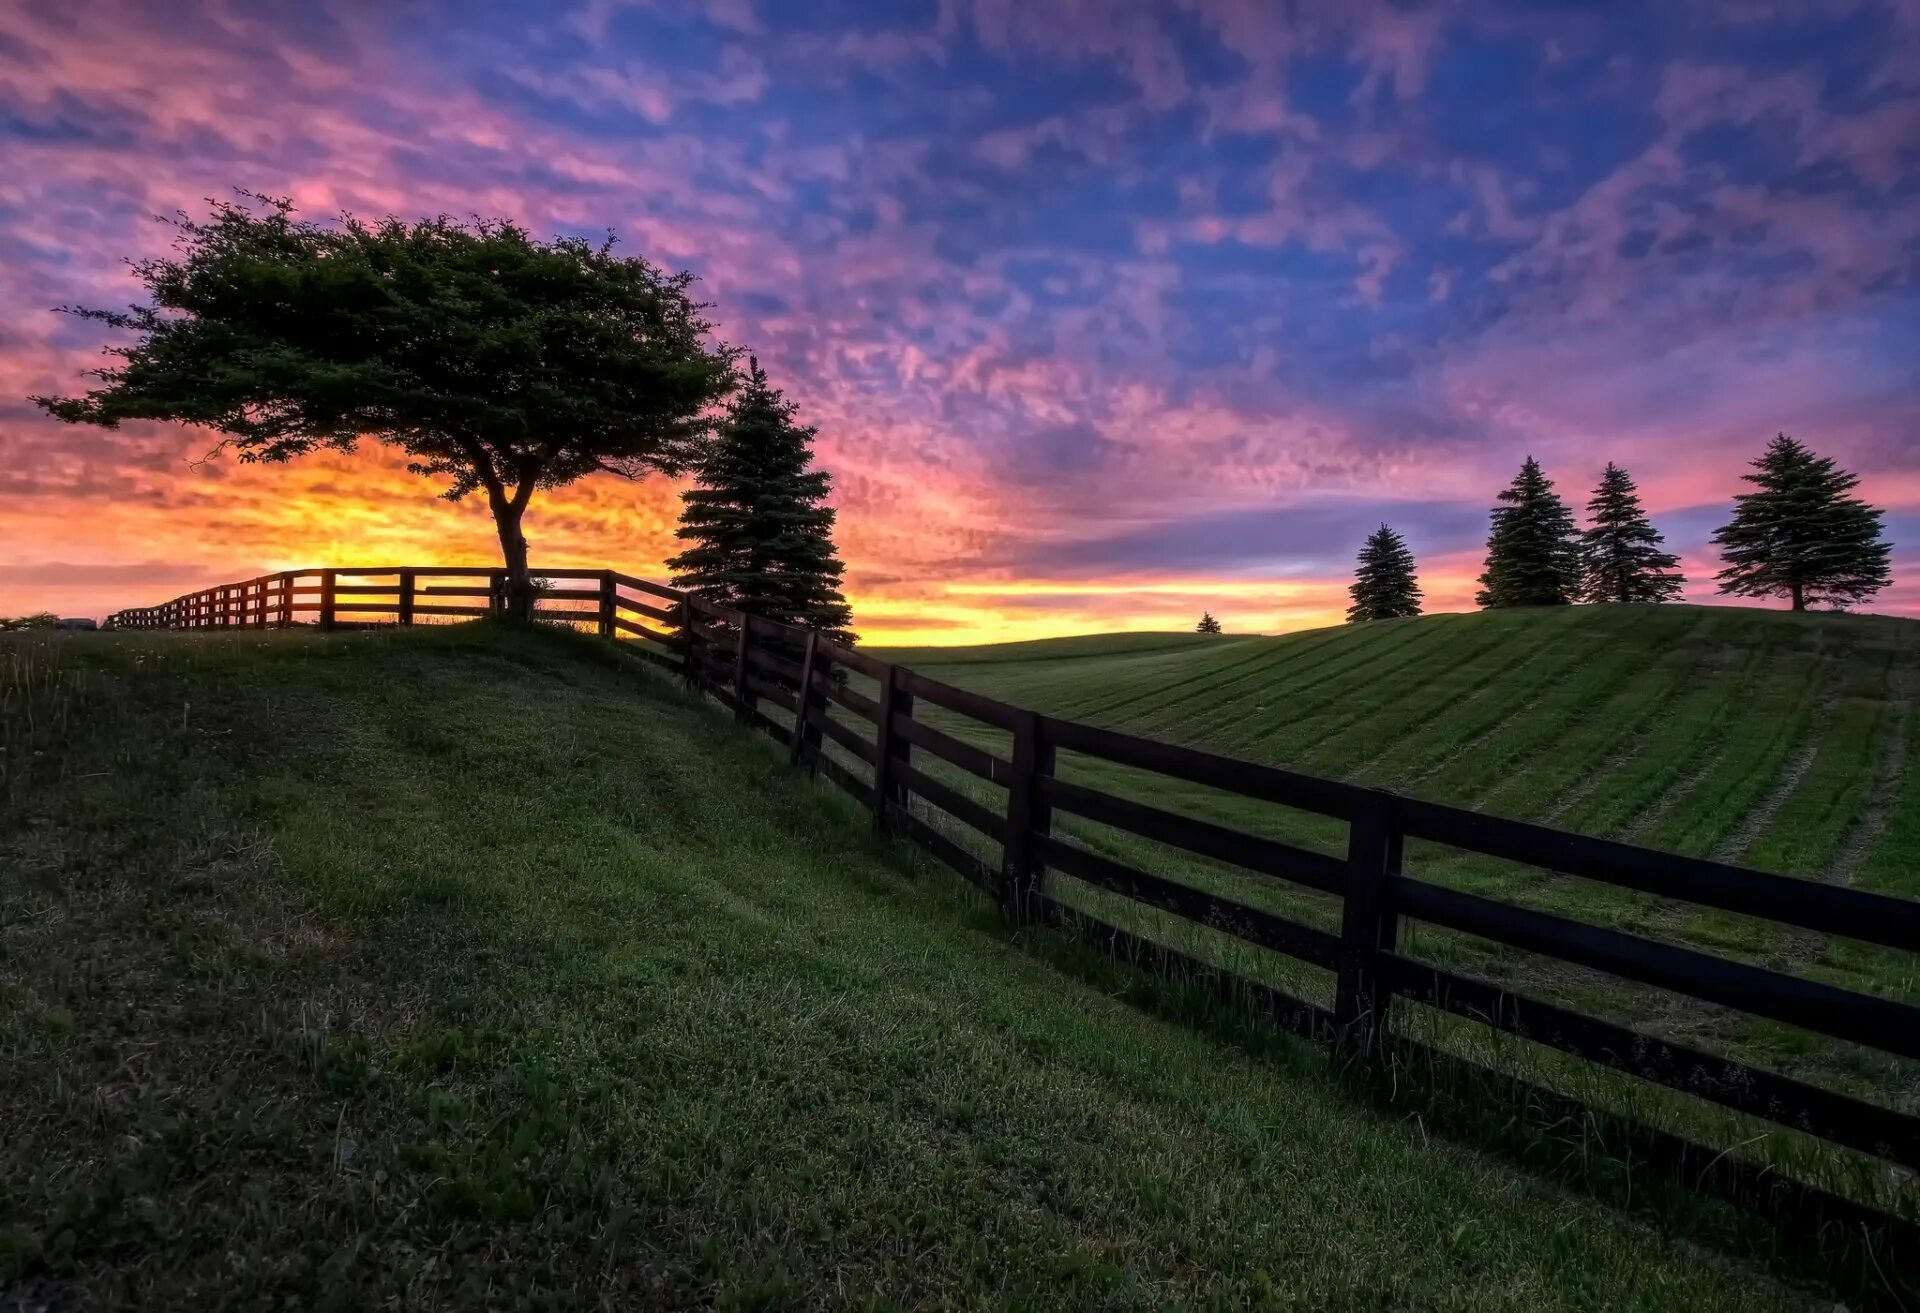 Countryside android. Забор в поле. Красивый закат в деревне. Поле закат забор. Пейзаж с деревьями.